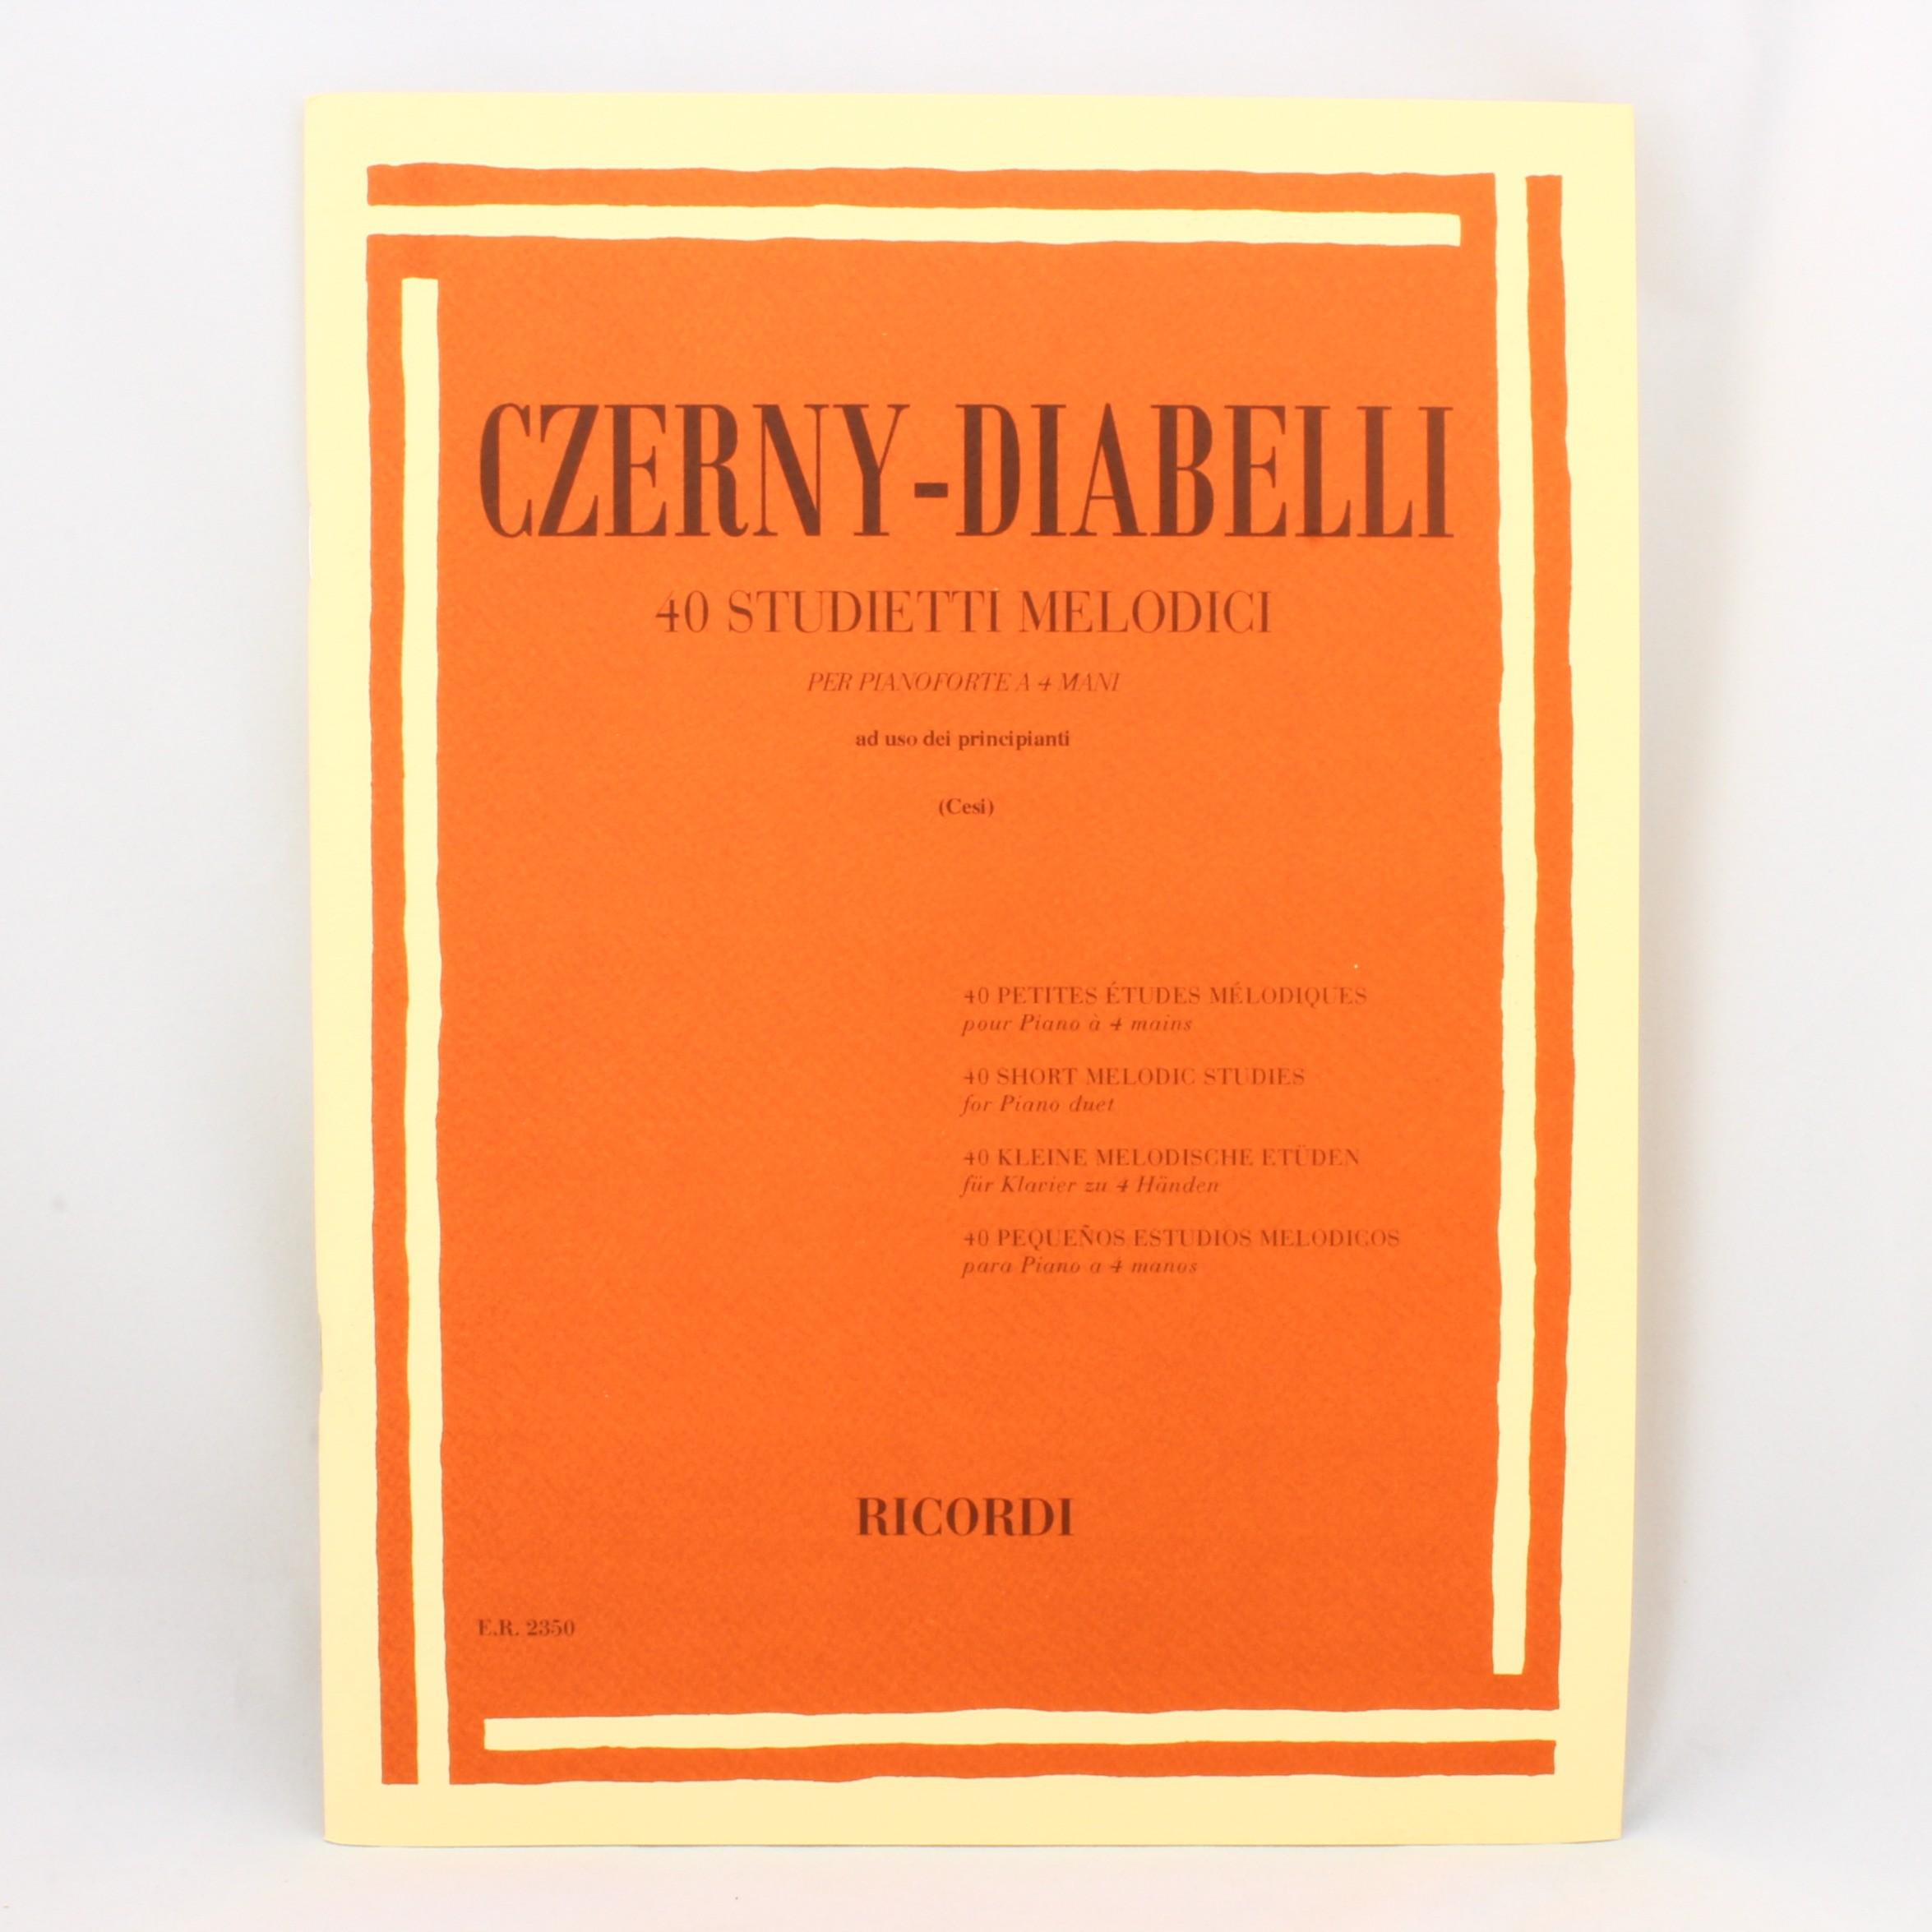 Czerny - Diabelli 40 Studietti melodici per pianoforte a 4 mani ad uso dei principianti (Cesi) - Ricordi